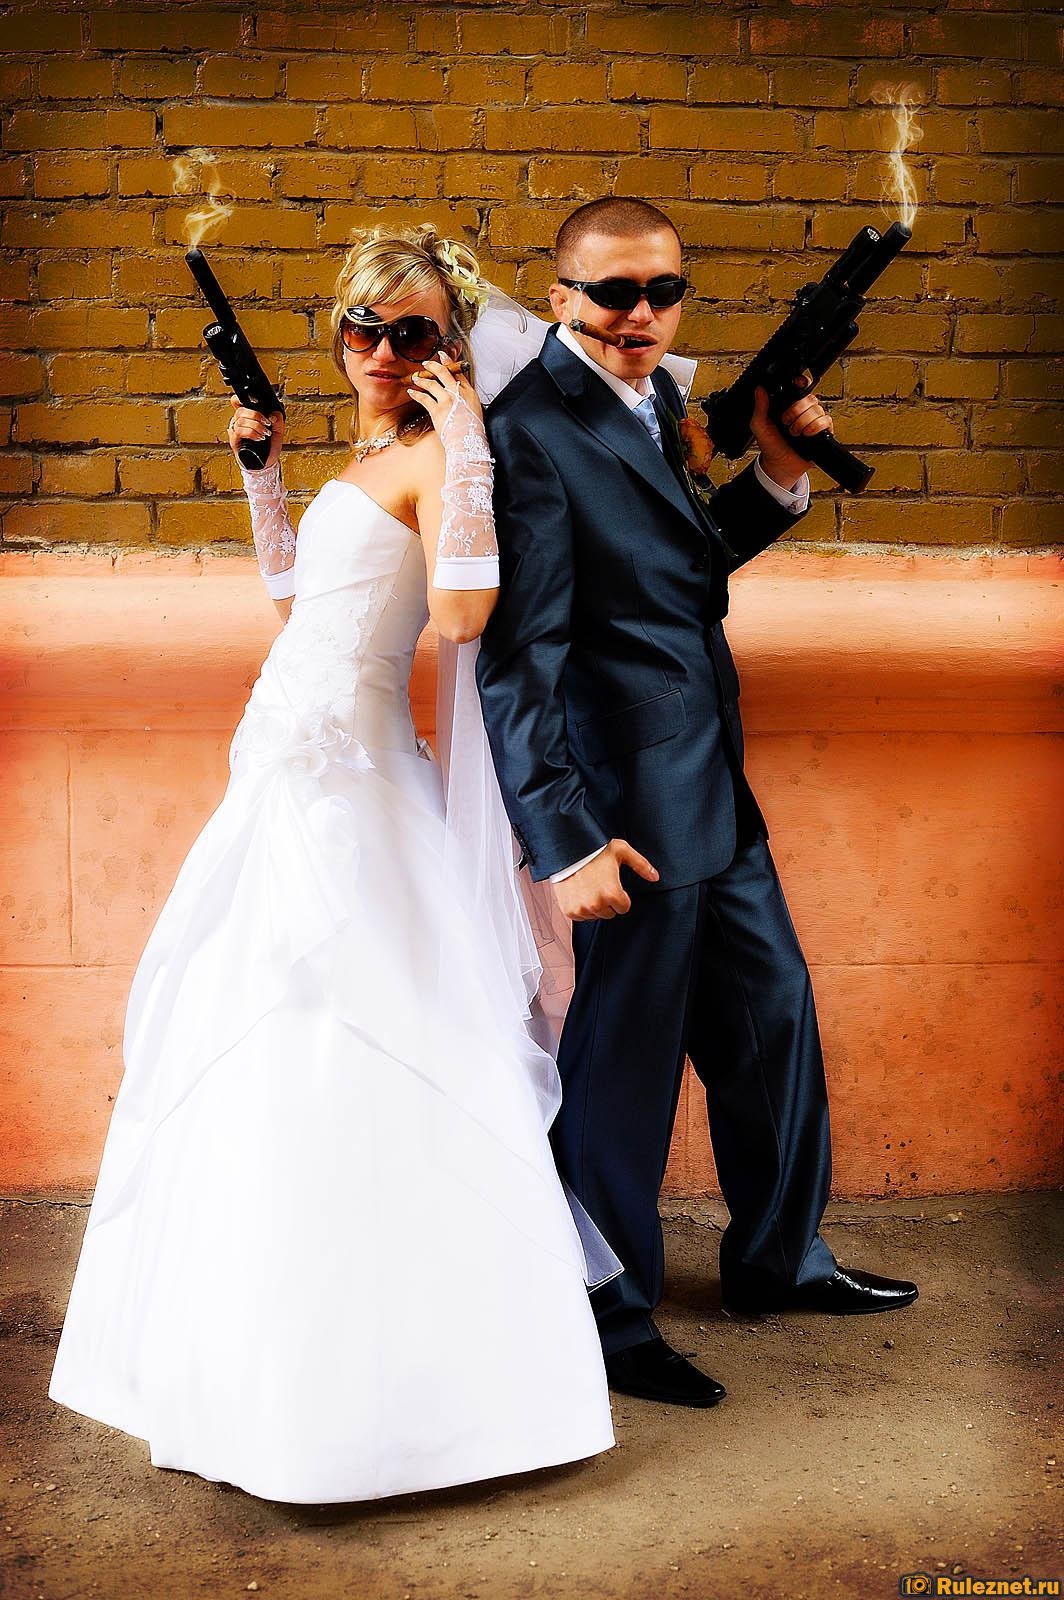 Чужая невеста бандита любич. Свадьба в стиле гангстеров. Свадебное платье в гангстерском стиле. Невеста в гангстерском стиле. Невеста в стиле гангстеров.